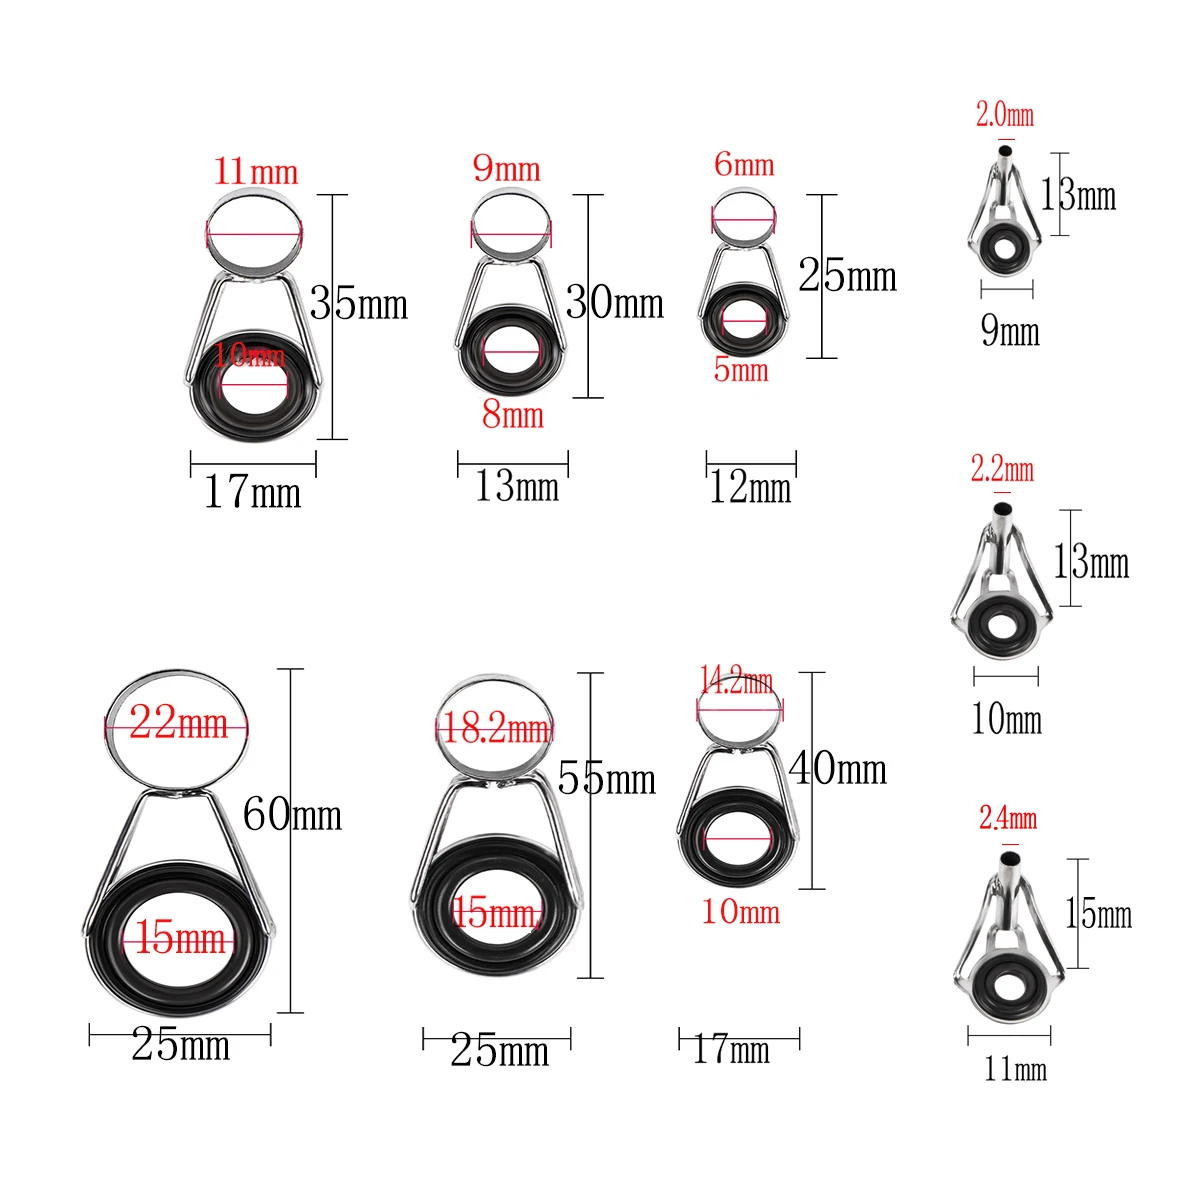 anillas caña telescopica – Compra anillas caña telescopica con envío gratis  en AliExpress version